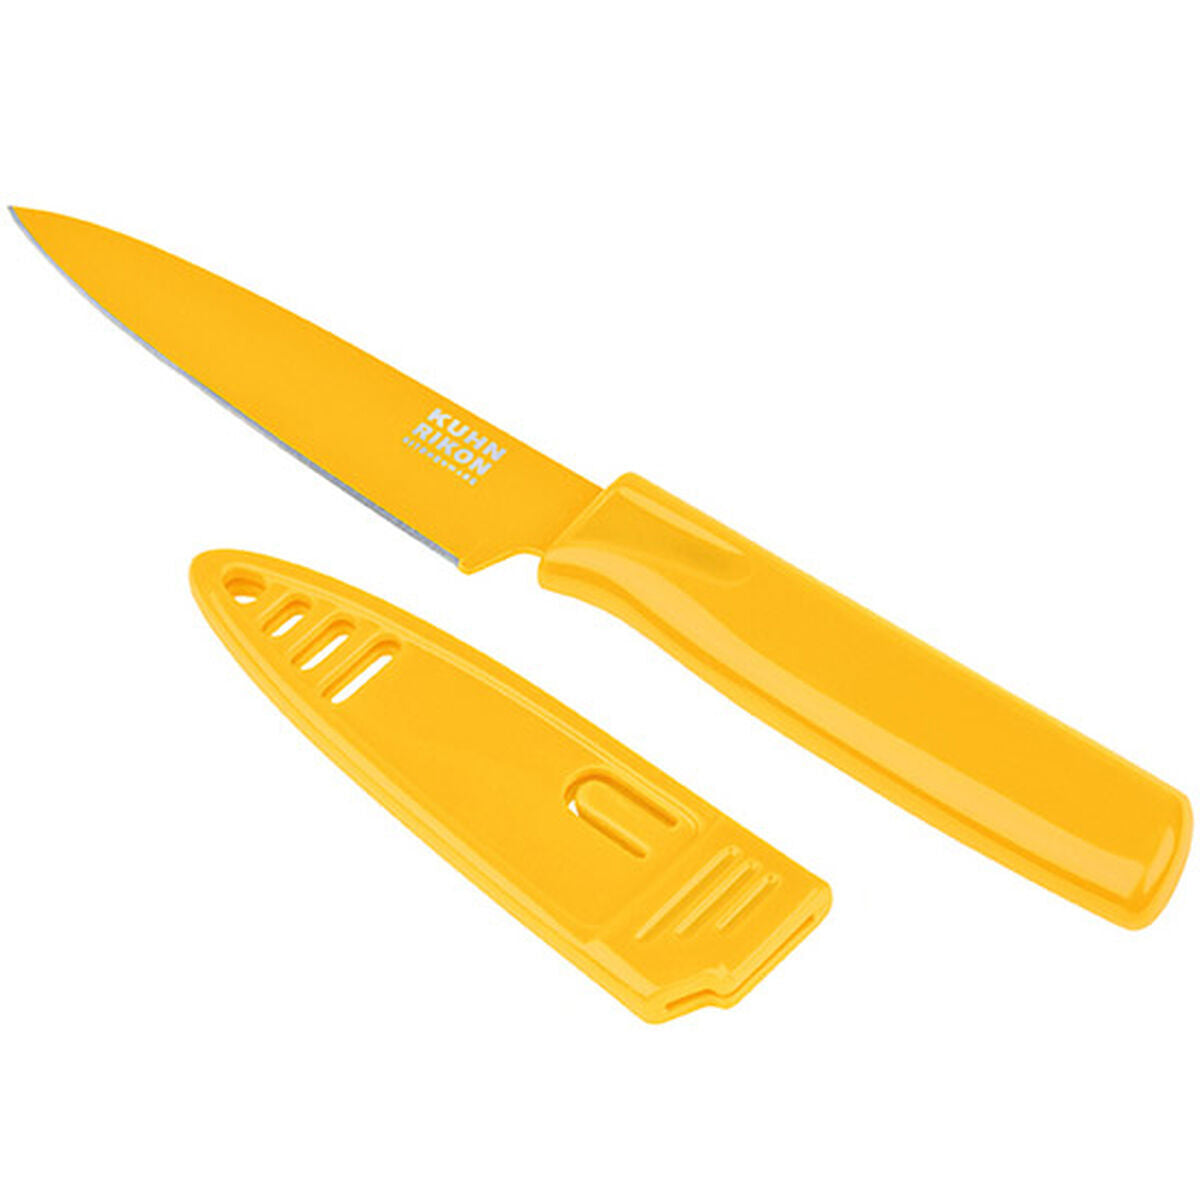 Vintage Multi Color Handle Paring Knife set of 4. 2 1/2 Blade